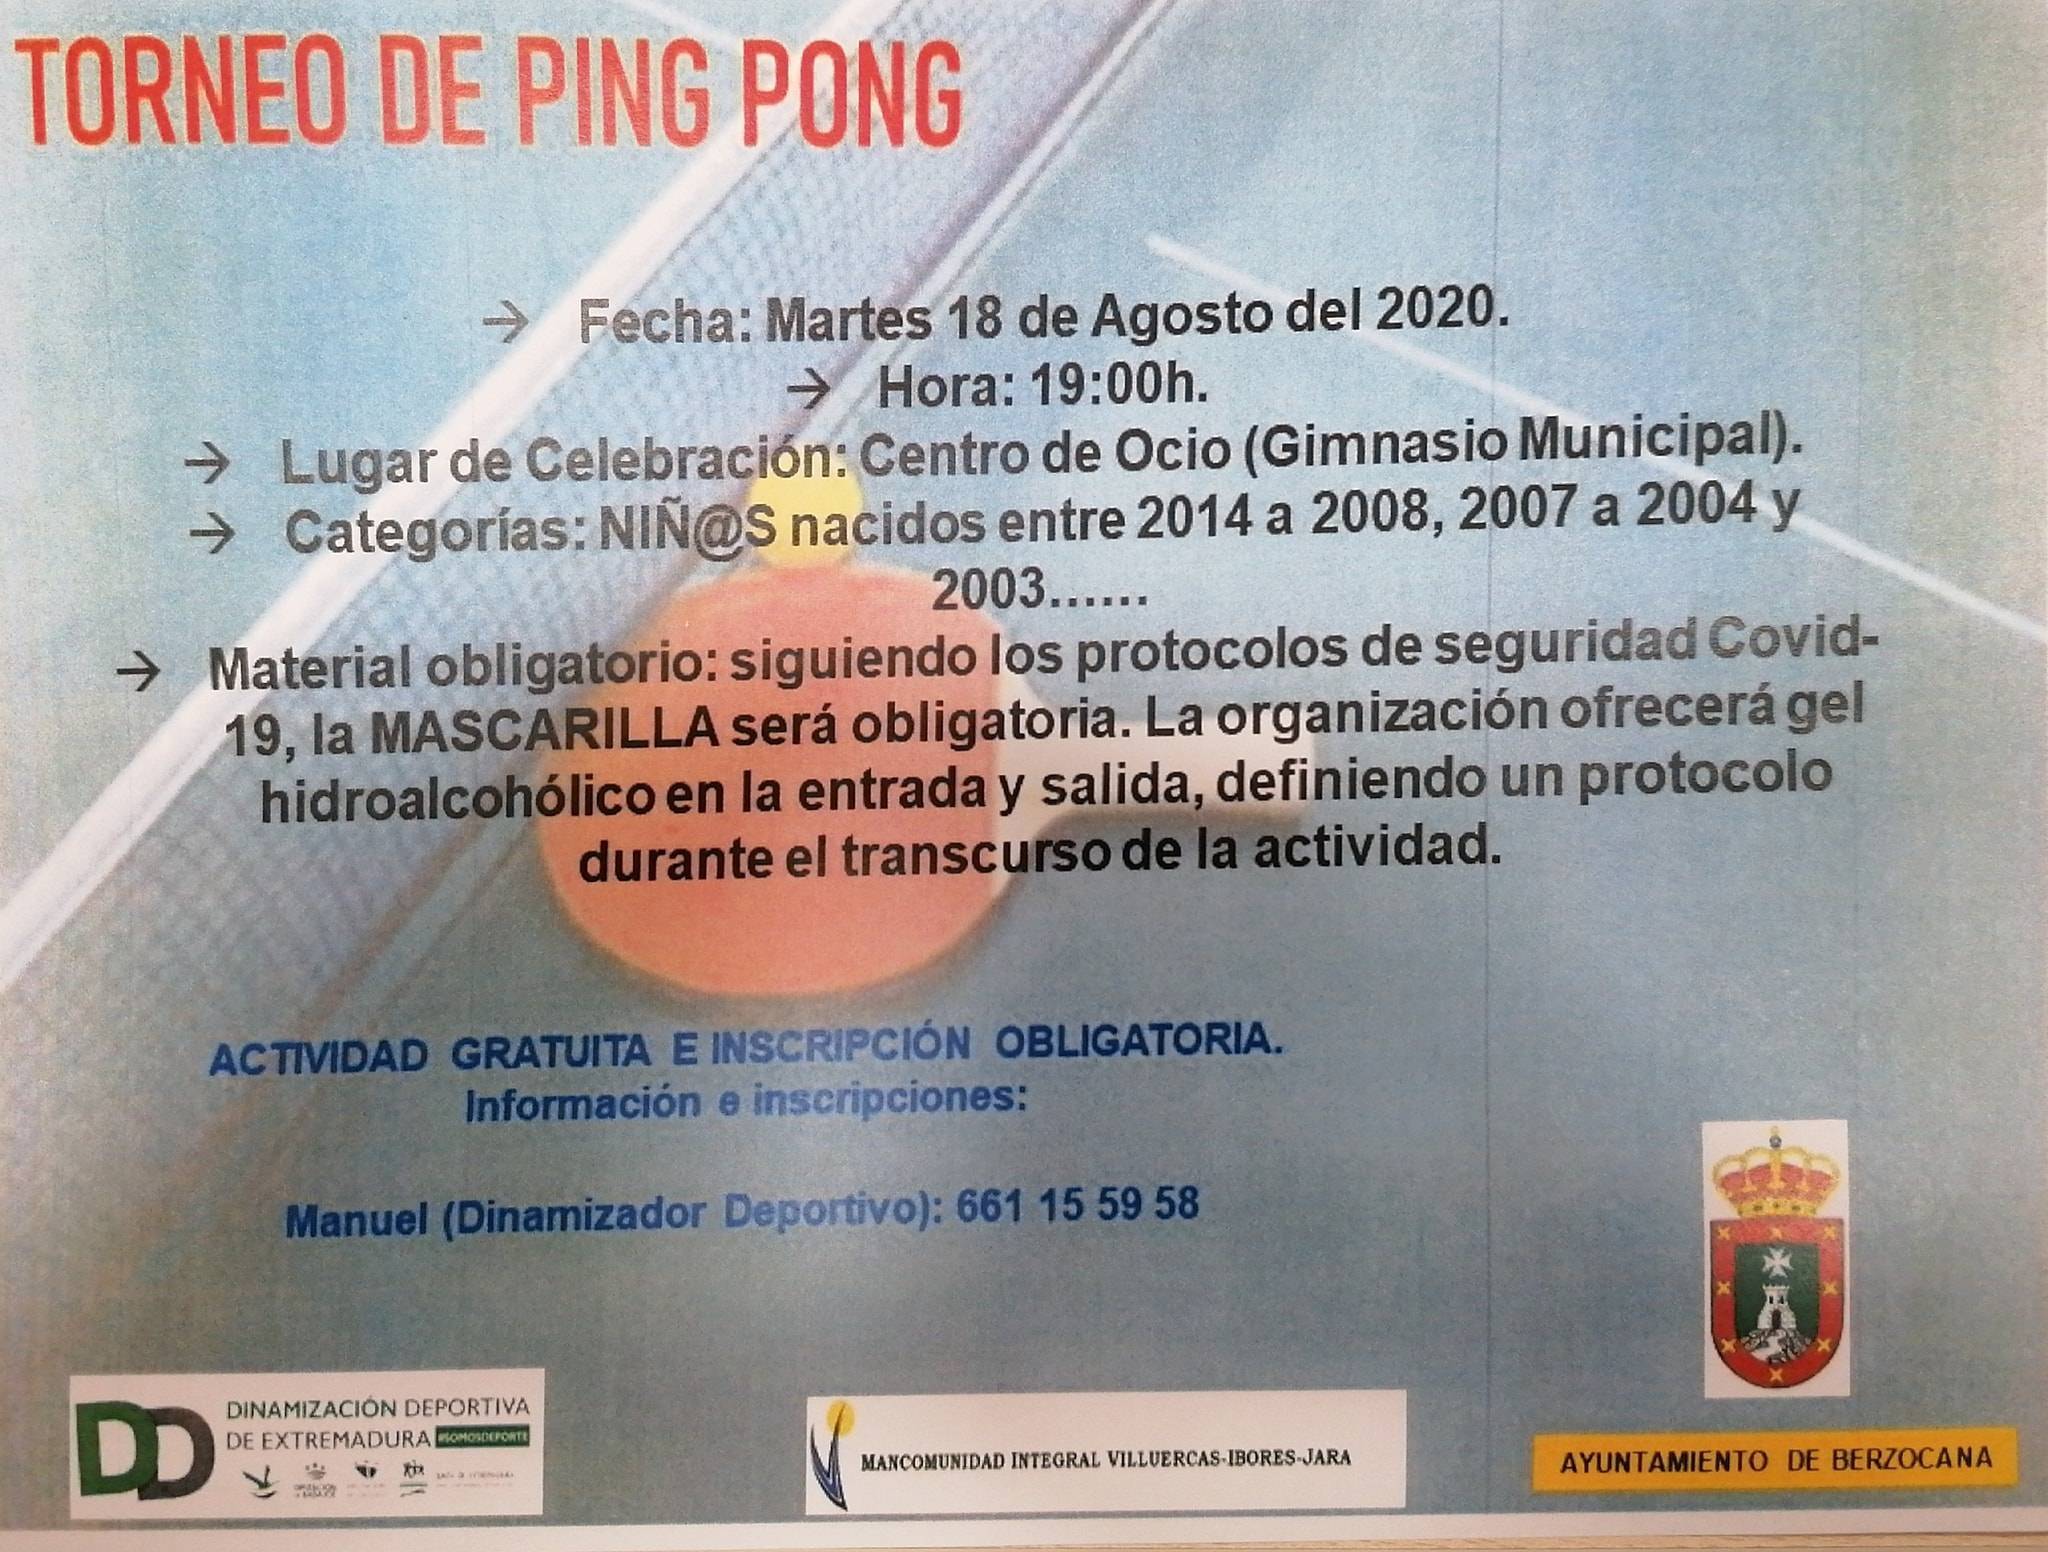 Torneo de ping-pong (agosto 2020) - Berzocana (Cáceres)